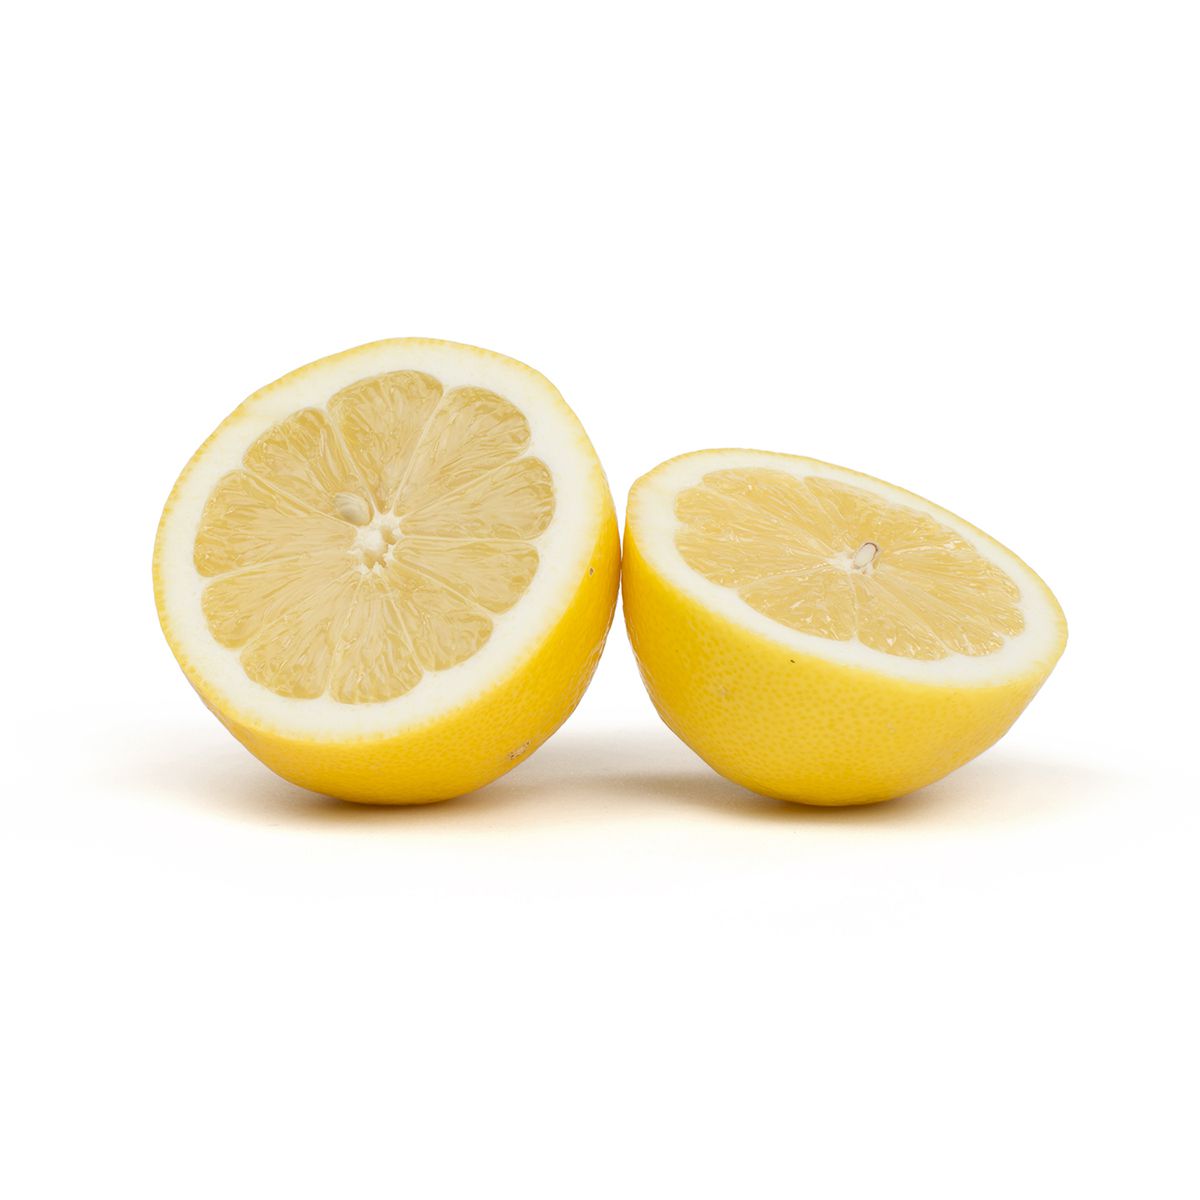 Sunkist Fancy Lemons